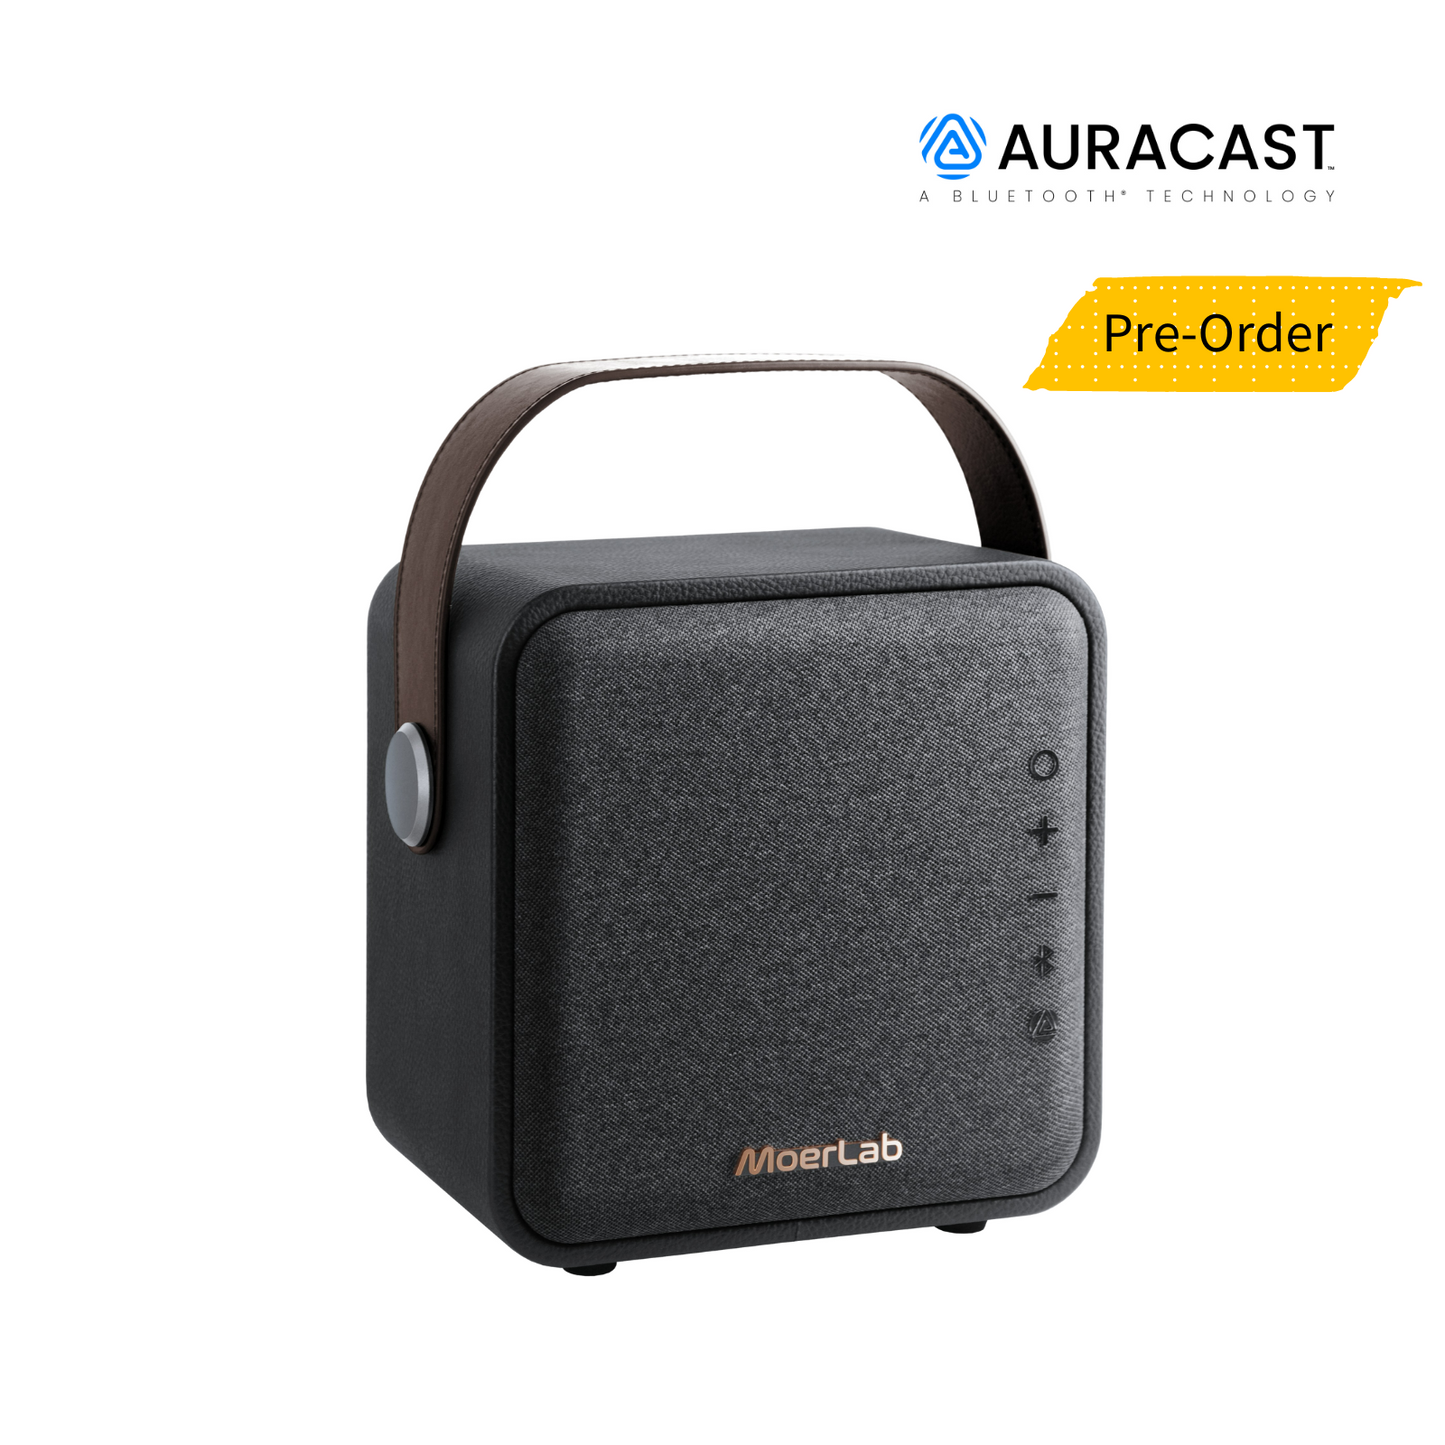 Overture™ Bluetooth Auracast Wireless Speaker